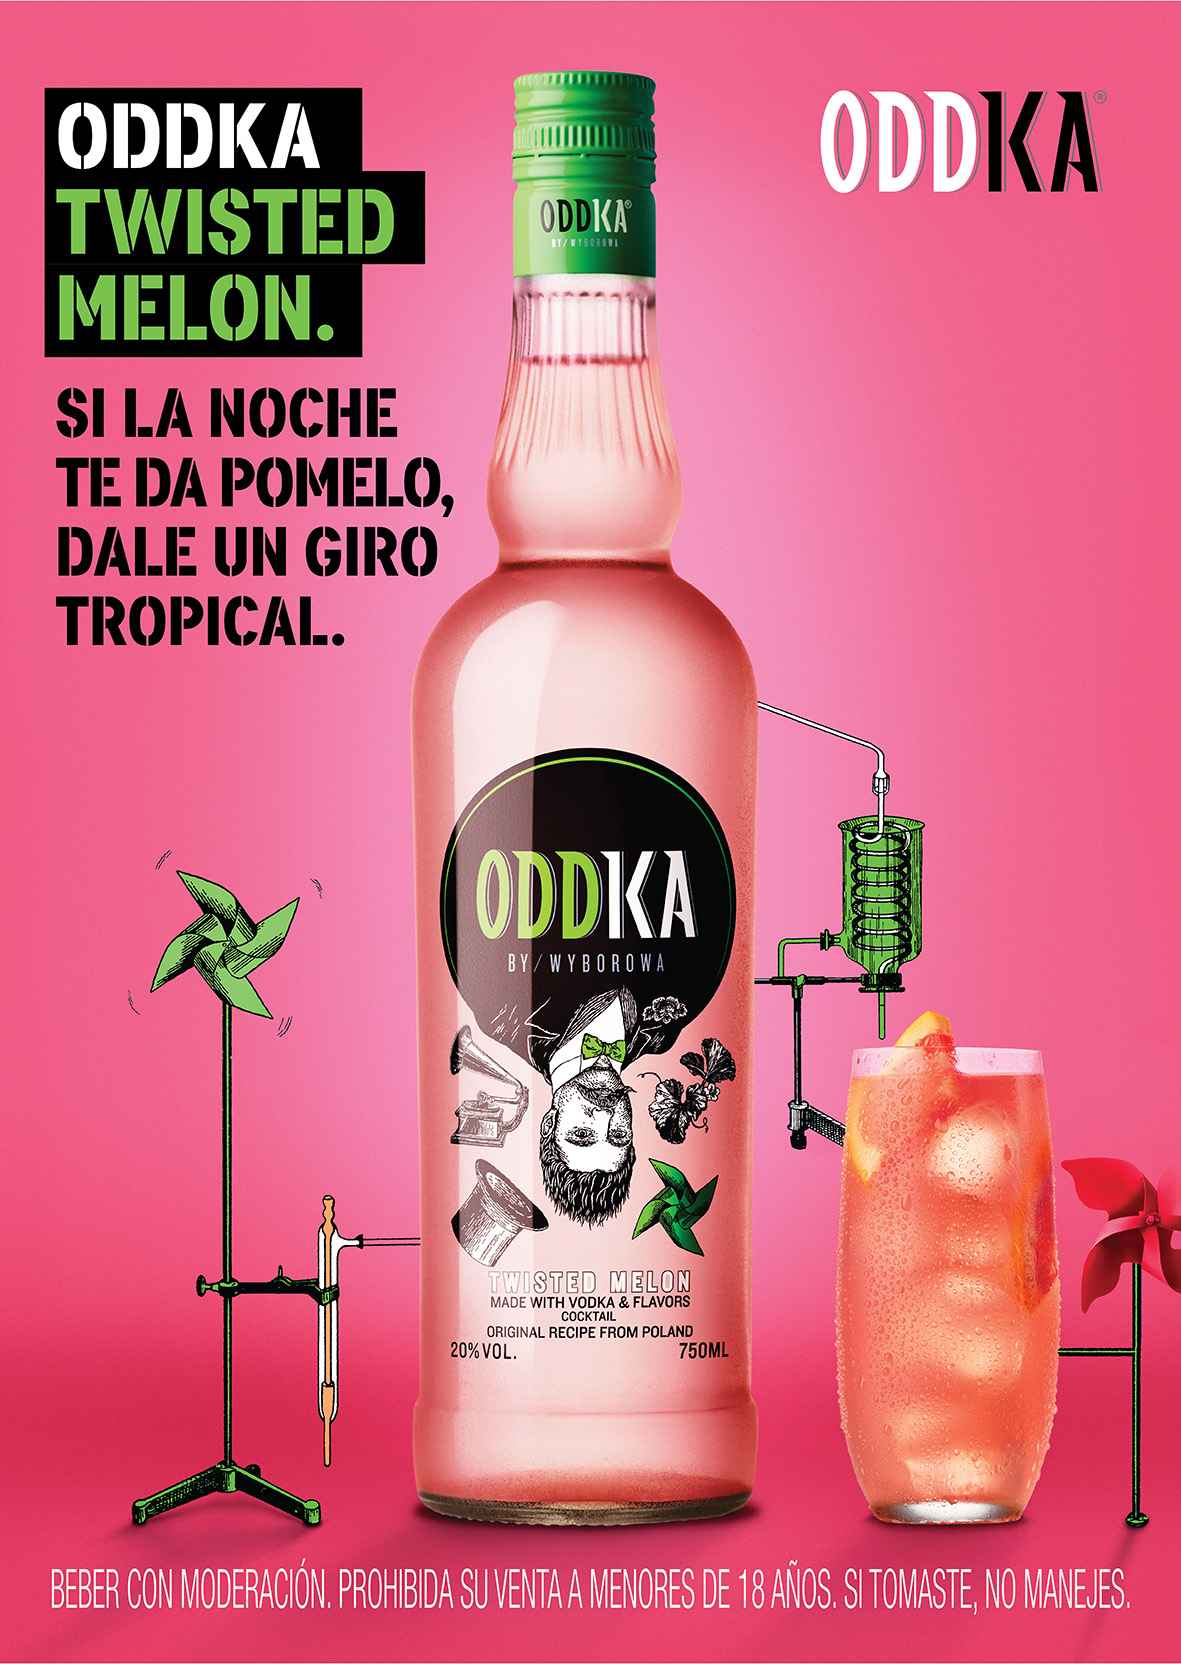 Portada de WTF? Agency, Pernod Ricard y Wit Oddoski presentan “Experimentos”, la nueva campaña de Oddka